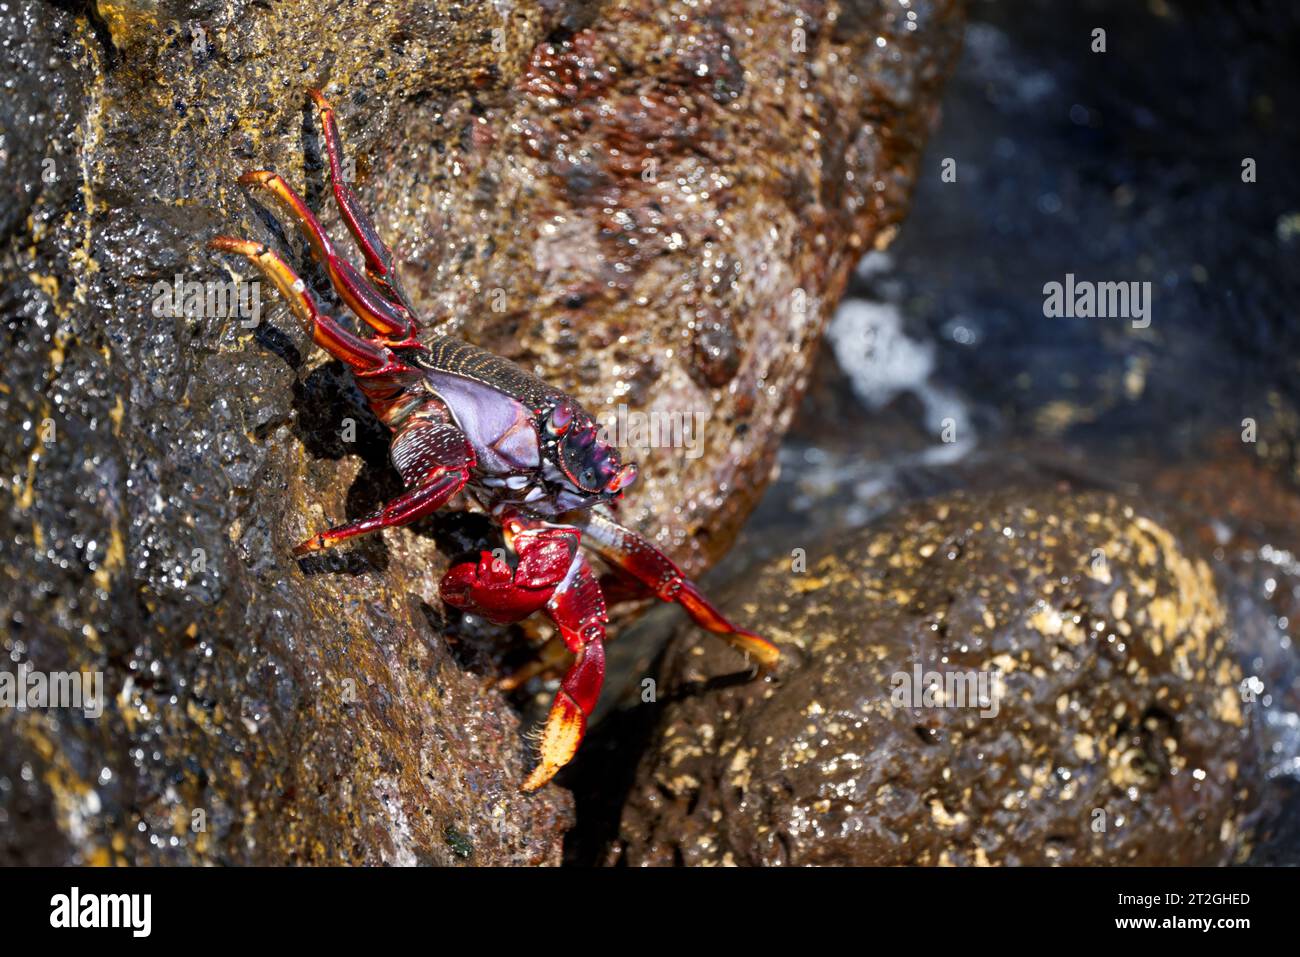 Crabe rouge de l'Atlantique (Grapsus adscensionis) crabe rouge adulte grimpant sur un rocher Banque D'Images